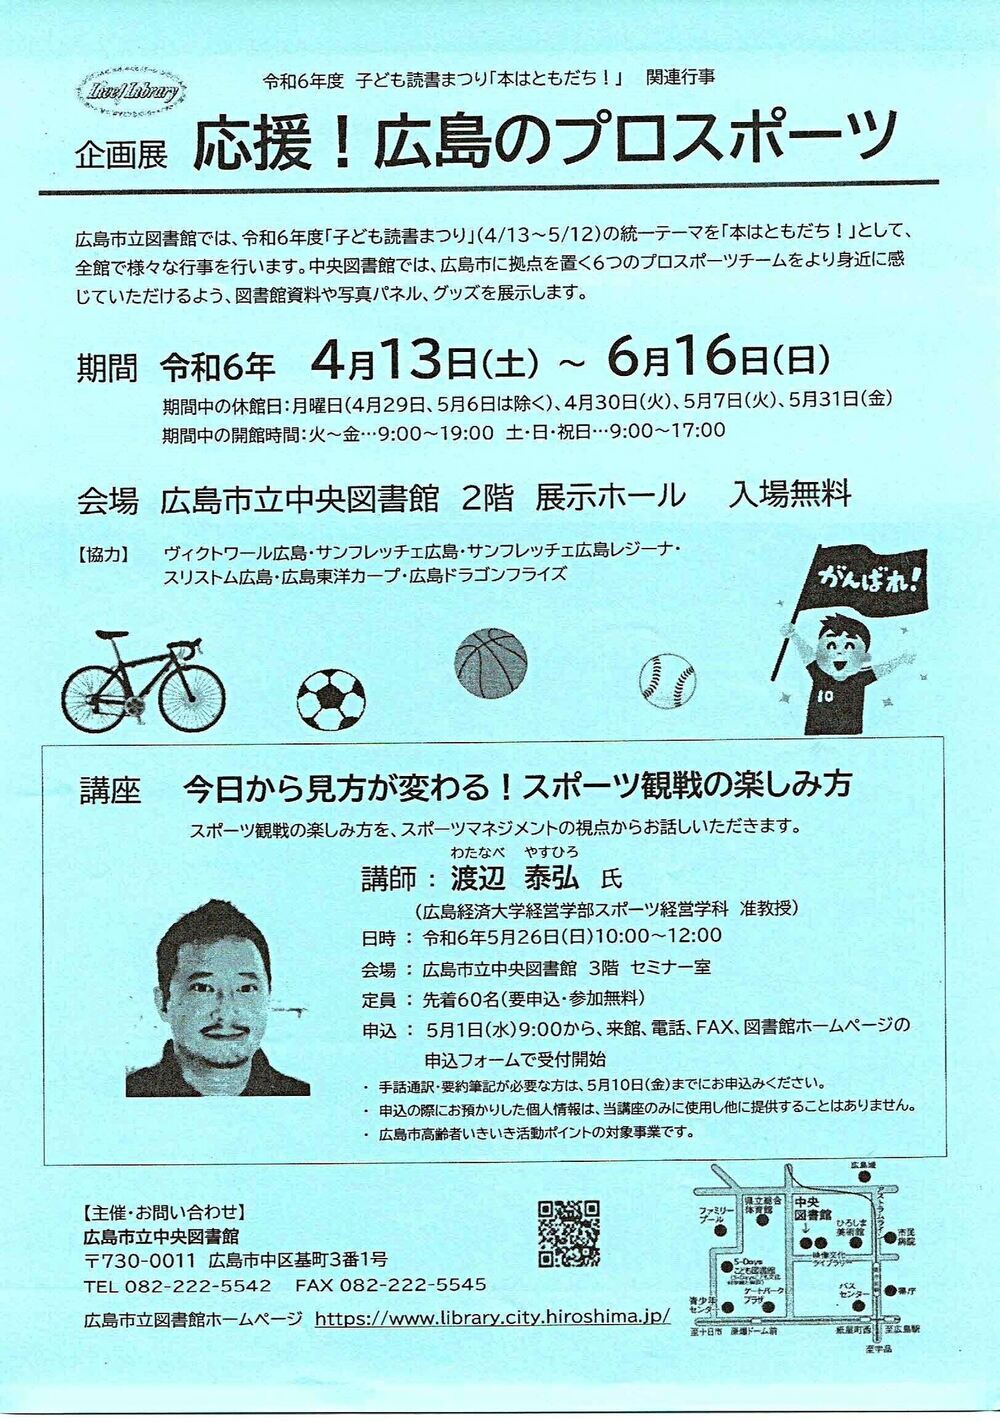 apoiar! Esportes profissionais em Hiroshima